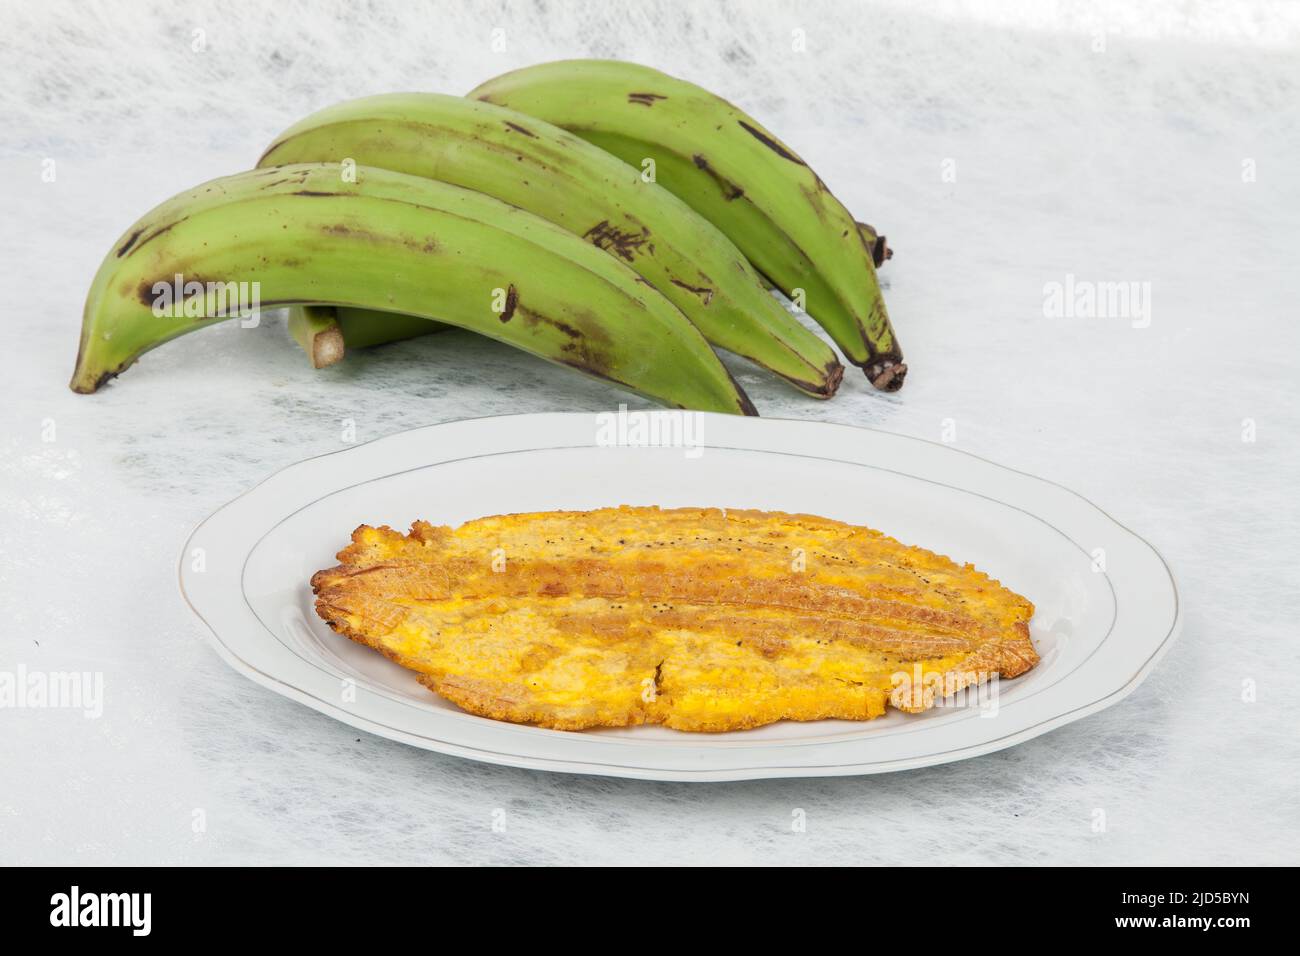 Patacon oder toston gebratene und abgeflachte Stücke von grünem Kochbananen, traditioneller Snack oder Begleitung in der Karibik. Stockfoto